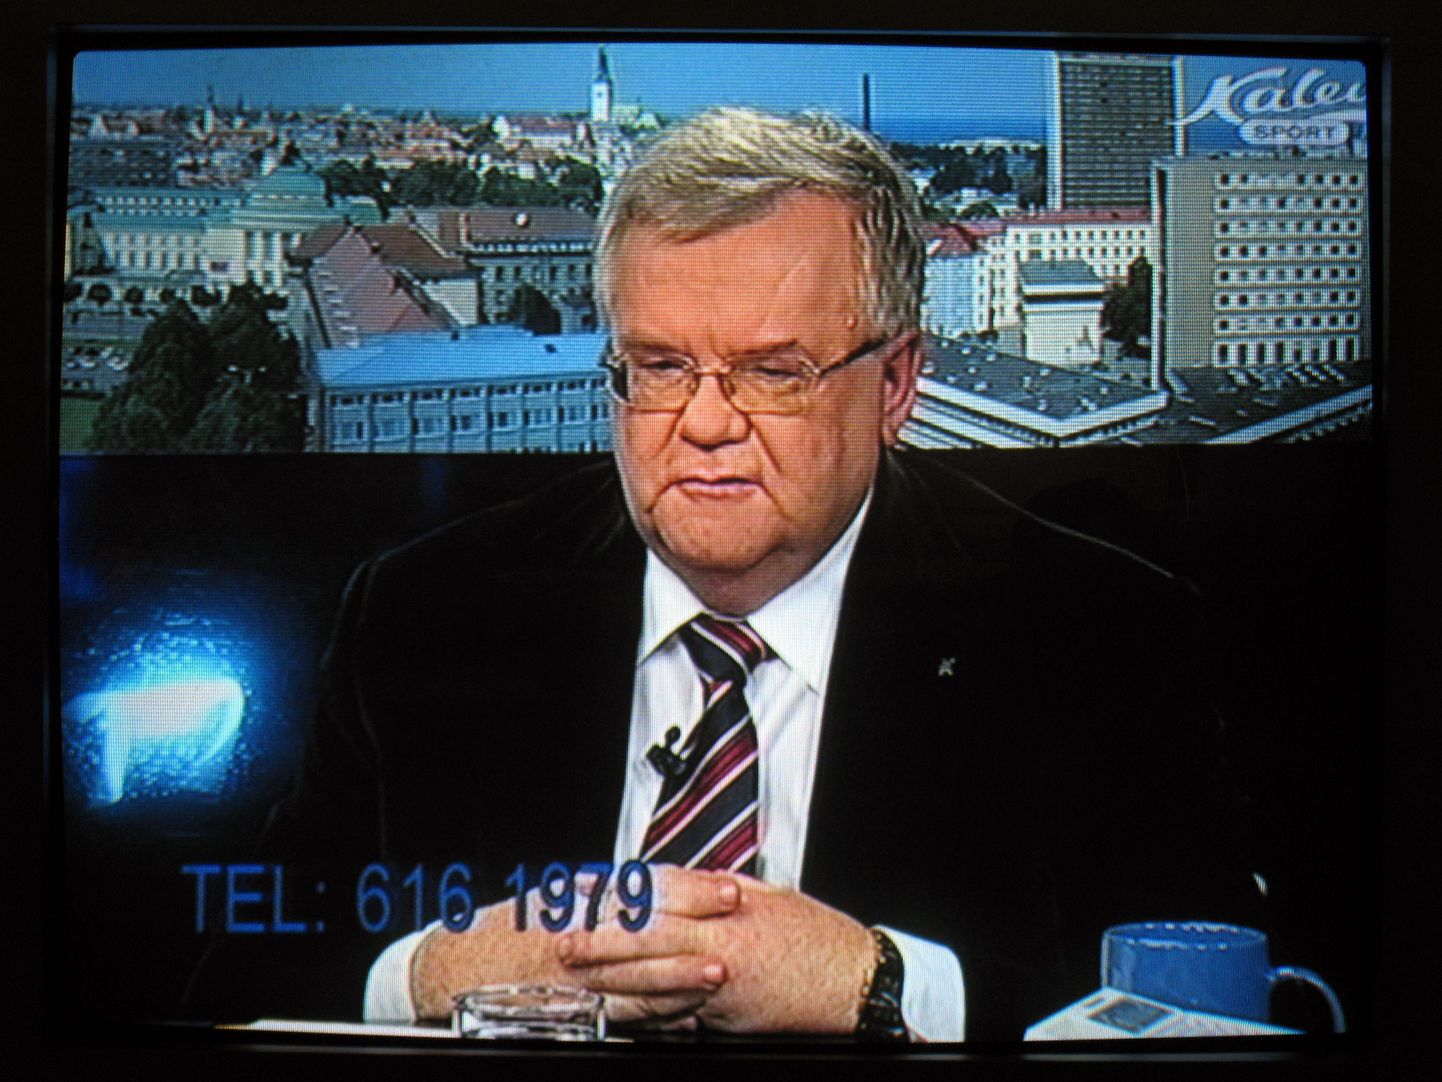 Edgar Savisaar telekanalil Kalev Sport eetris olnud saates Linnapea tund.